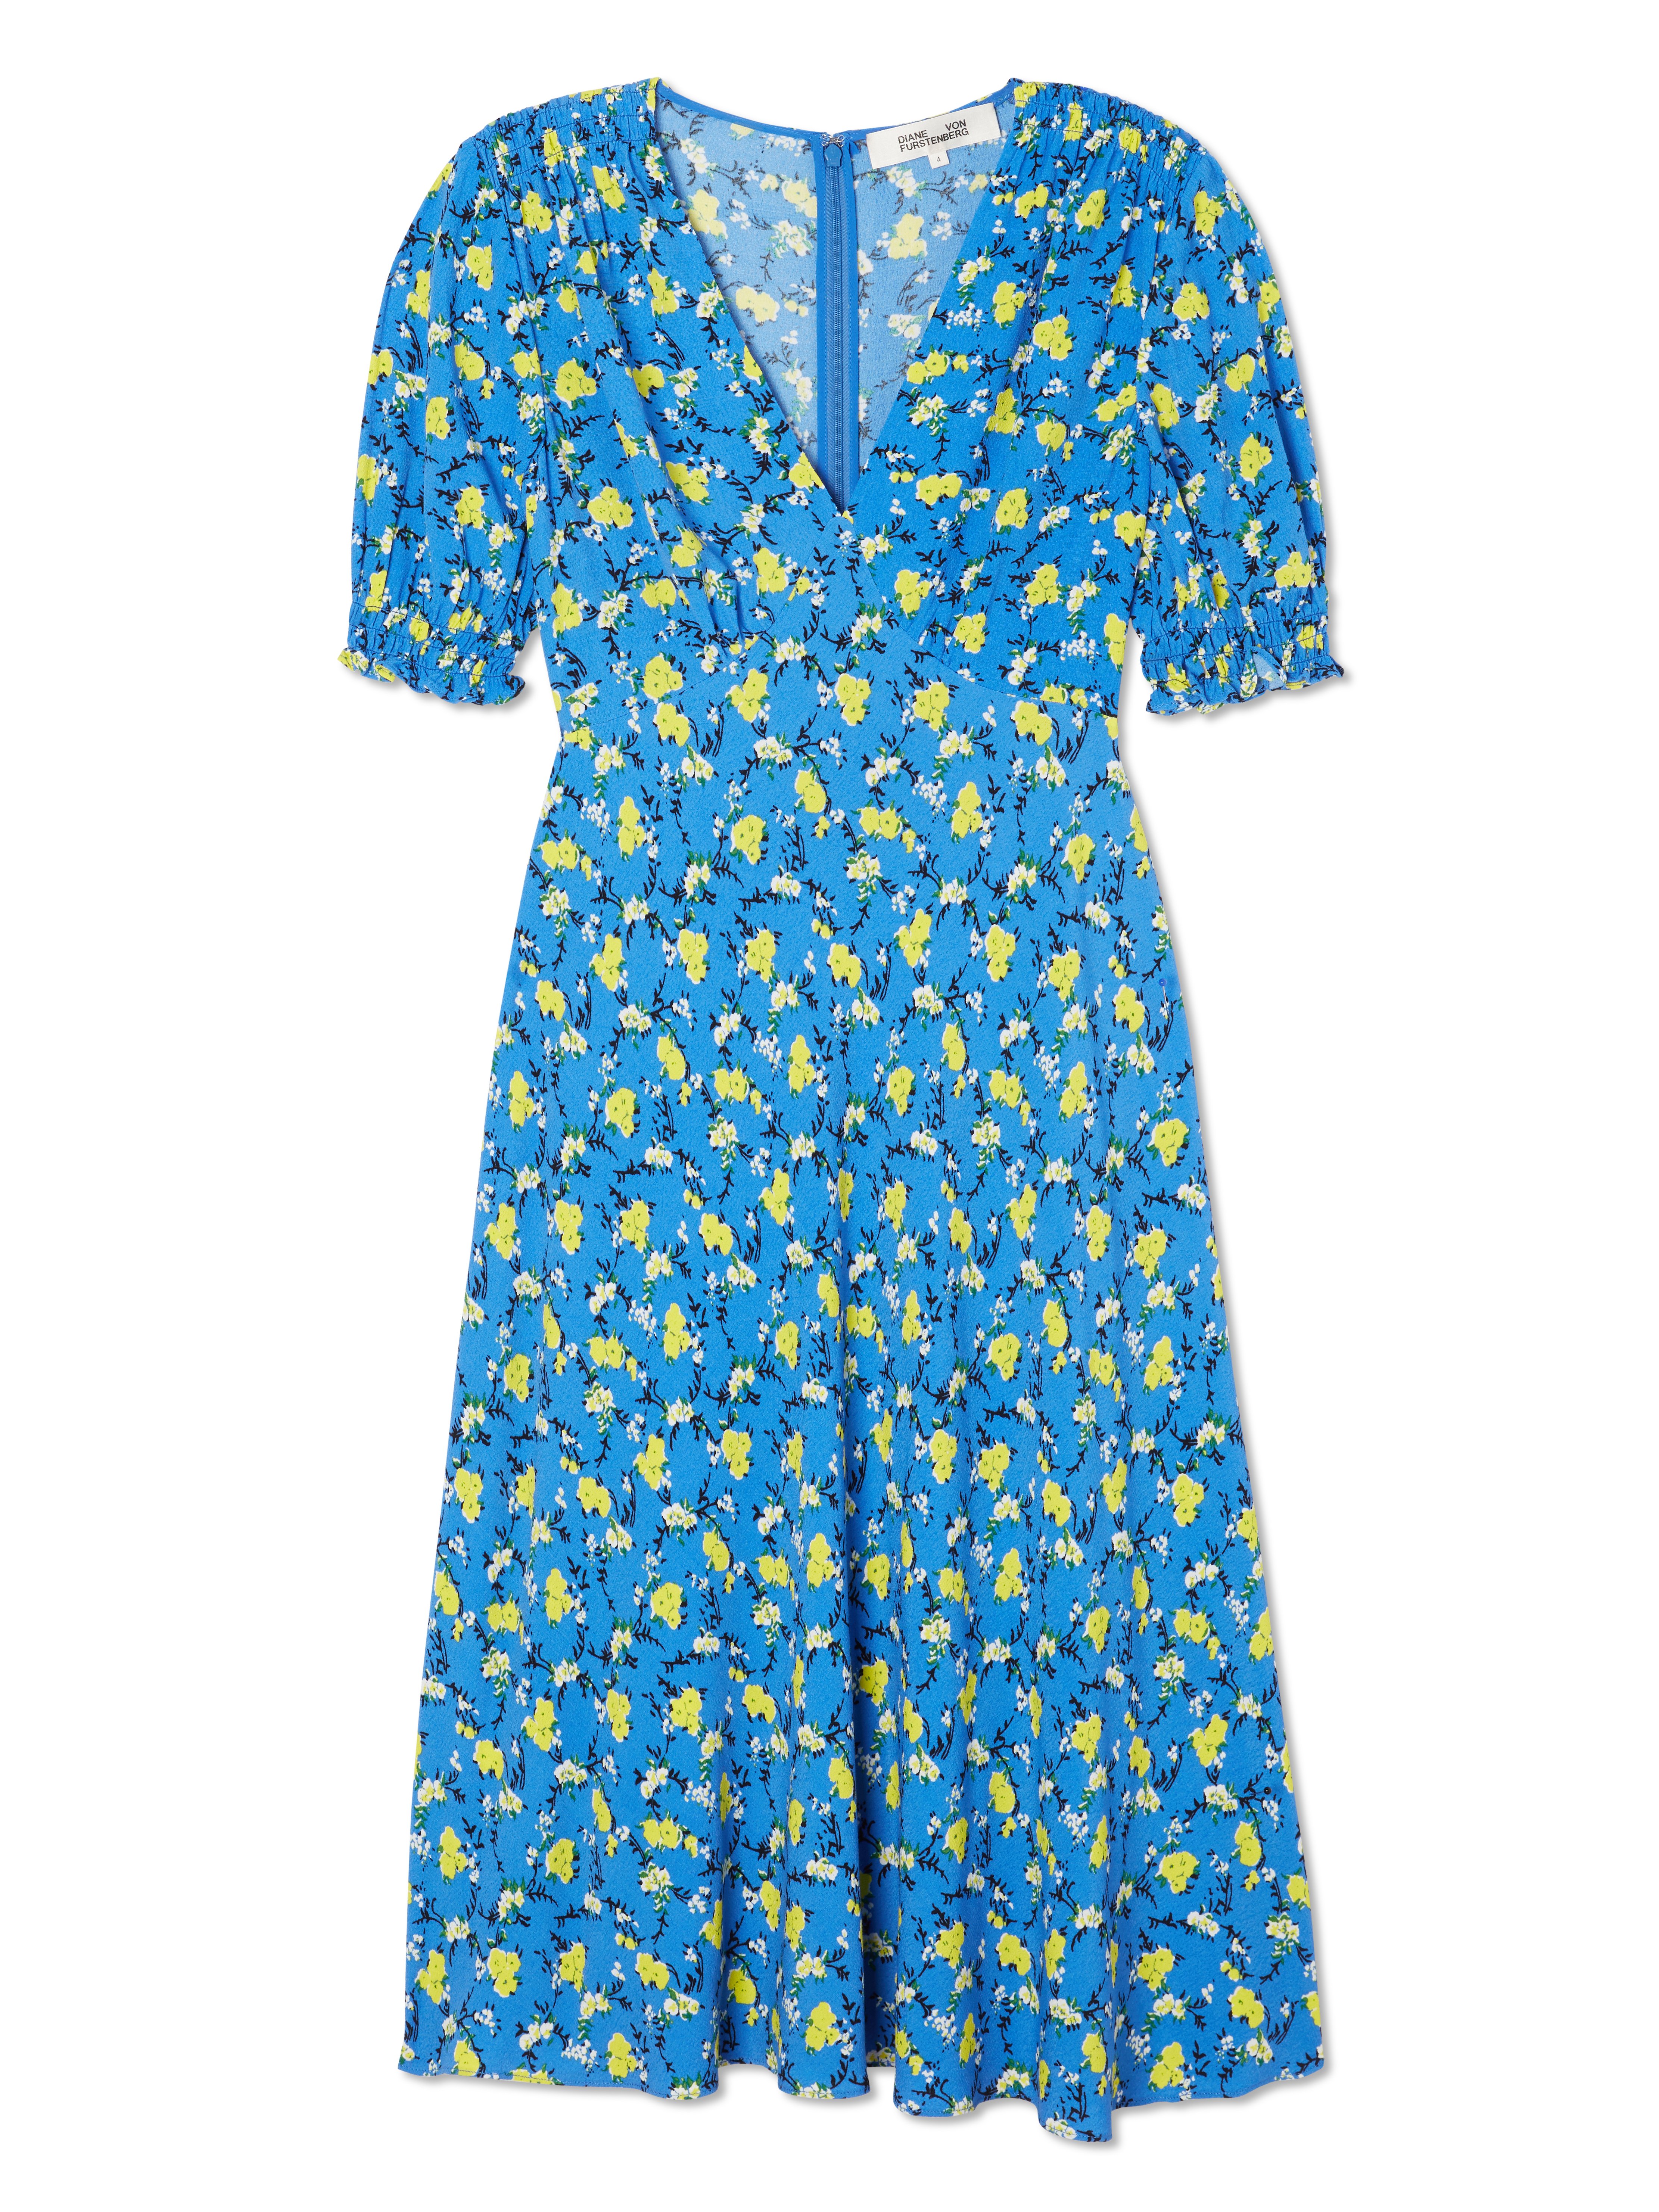 Diane von Furstenberg Jemma Floral Midi Dress | Verishop